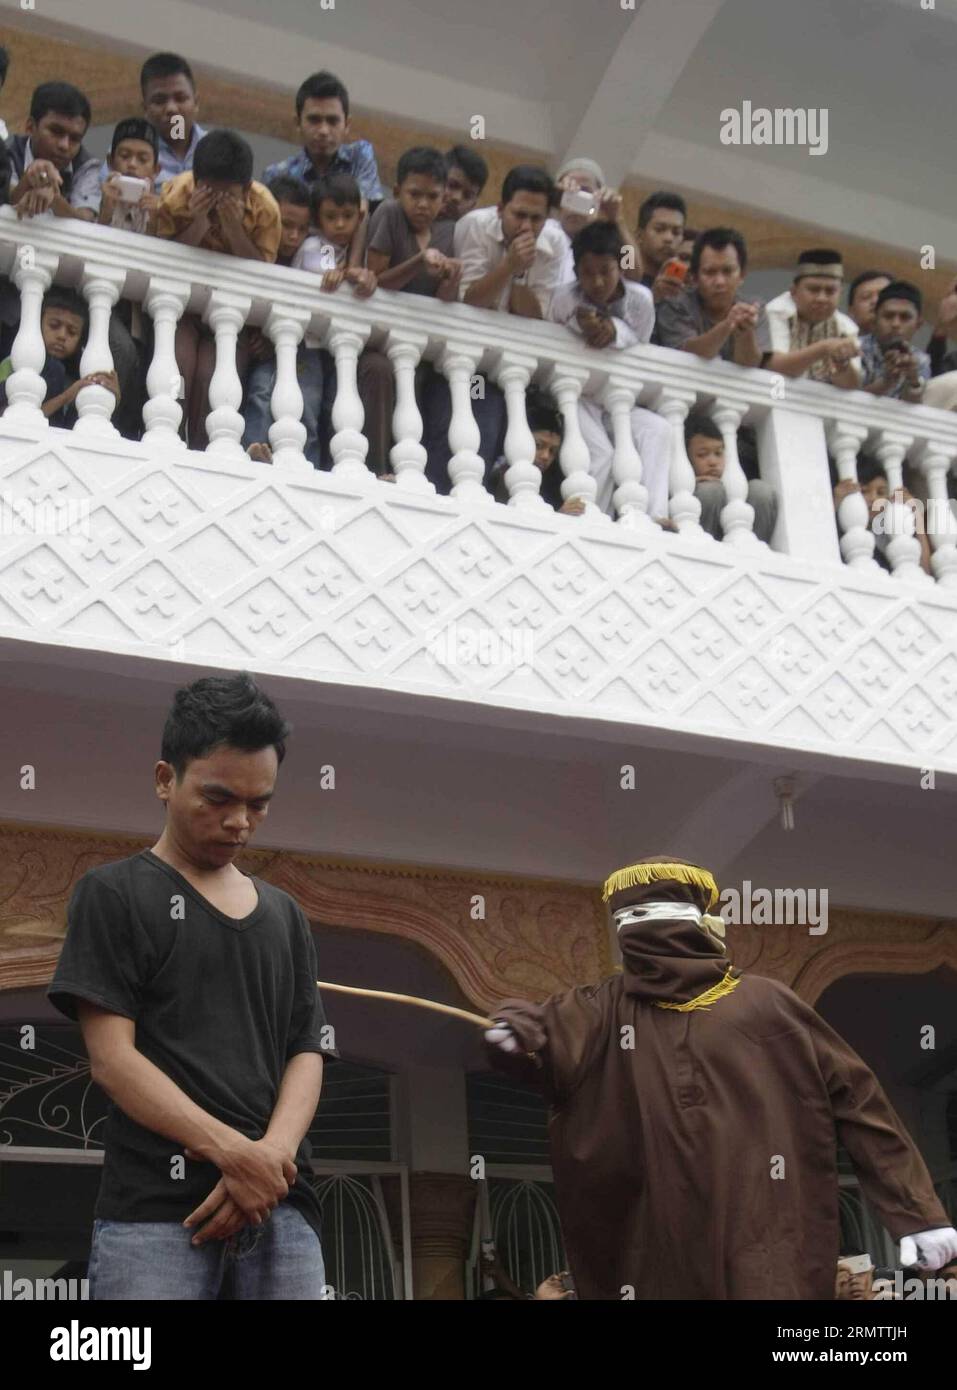 (140919) -- ACEH, 19 settembre 2014. -- Un funzionario della Sharia frena un uomo condannato per gioco d'azzardo con una canna da rattan durante una fustigazione pubblica ad Aceh, Indonesia, il 19 settembre 2014. L'amministrazione provinciale di Aceh, nel nord dell'isola indonesiana di Sumatra, ha approvato una legge chiamata Qanun Jinayat implementato una versione della legge islamica della Sharia dal 2001. INDONESIA-LEGGE ACEH-SHARIA Junaidi PUBLICATIONxNOTxINxCHN Aceh 19 settembre 2014 un funzionario della Sharia un uomo condannato per gioco d'azzardo con una canna di rattan durante un pubblico ad Aceh Indonesia IL 19 settembre 2014 l'Amministrazione Provinciale di Aceh Foto Stock